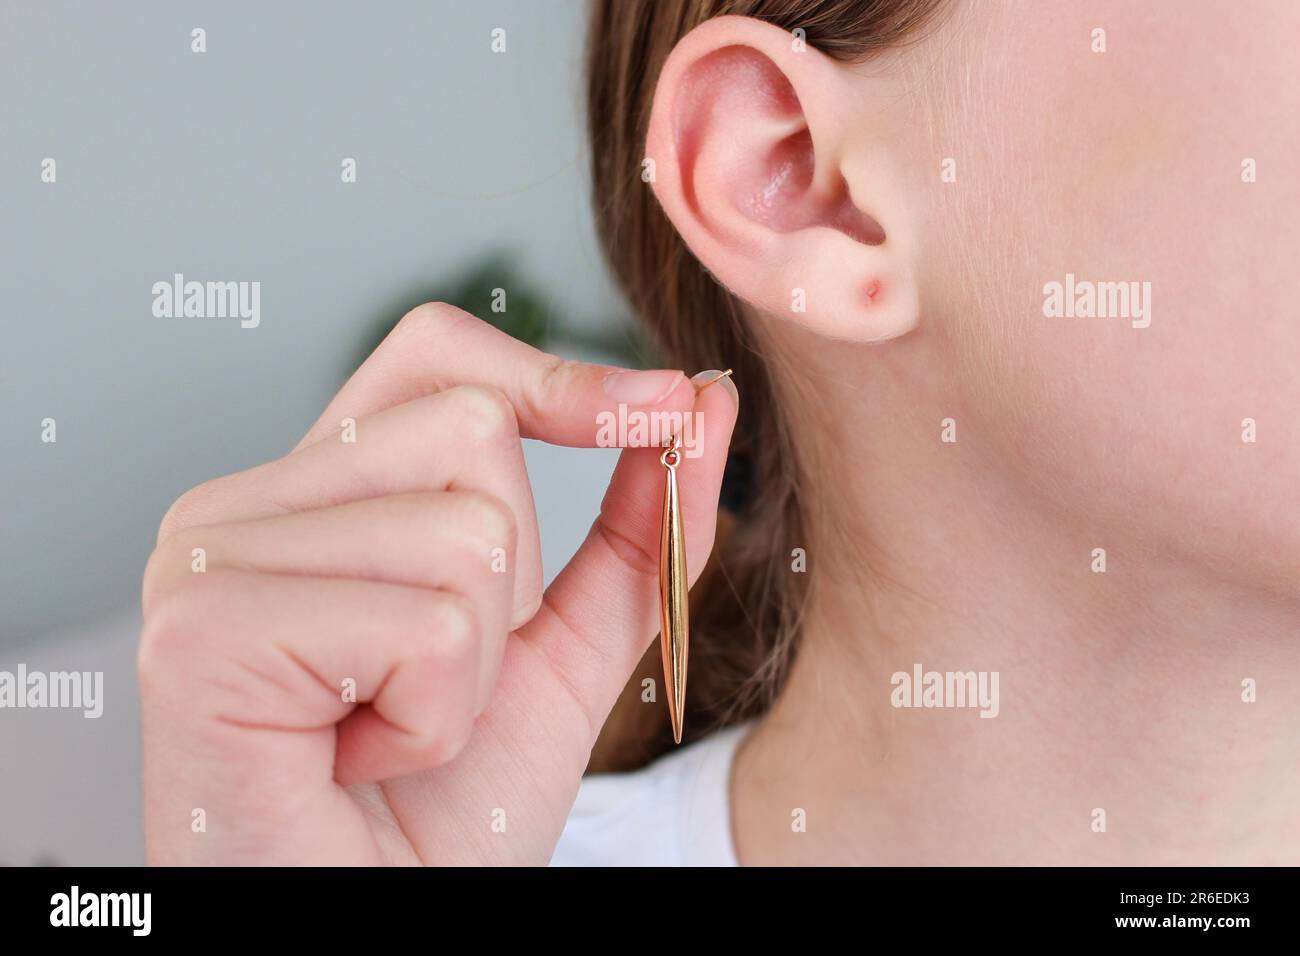 Der Teenager riss sich seinen Ohrläppchen mit einem Ohrring ab. Die Wunde am Ohr. Stockfoto